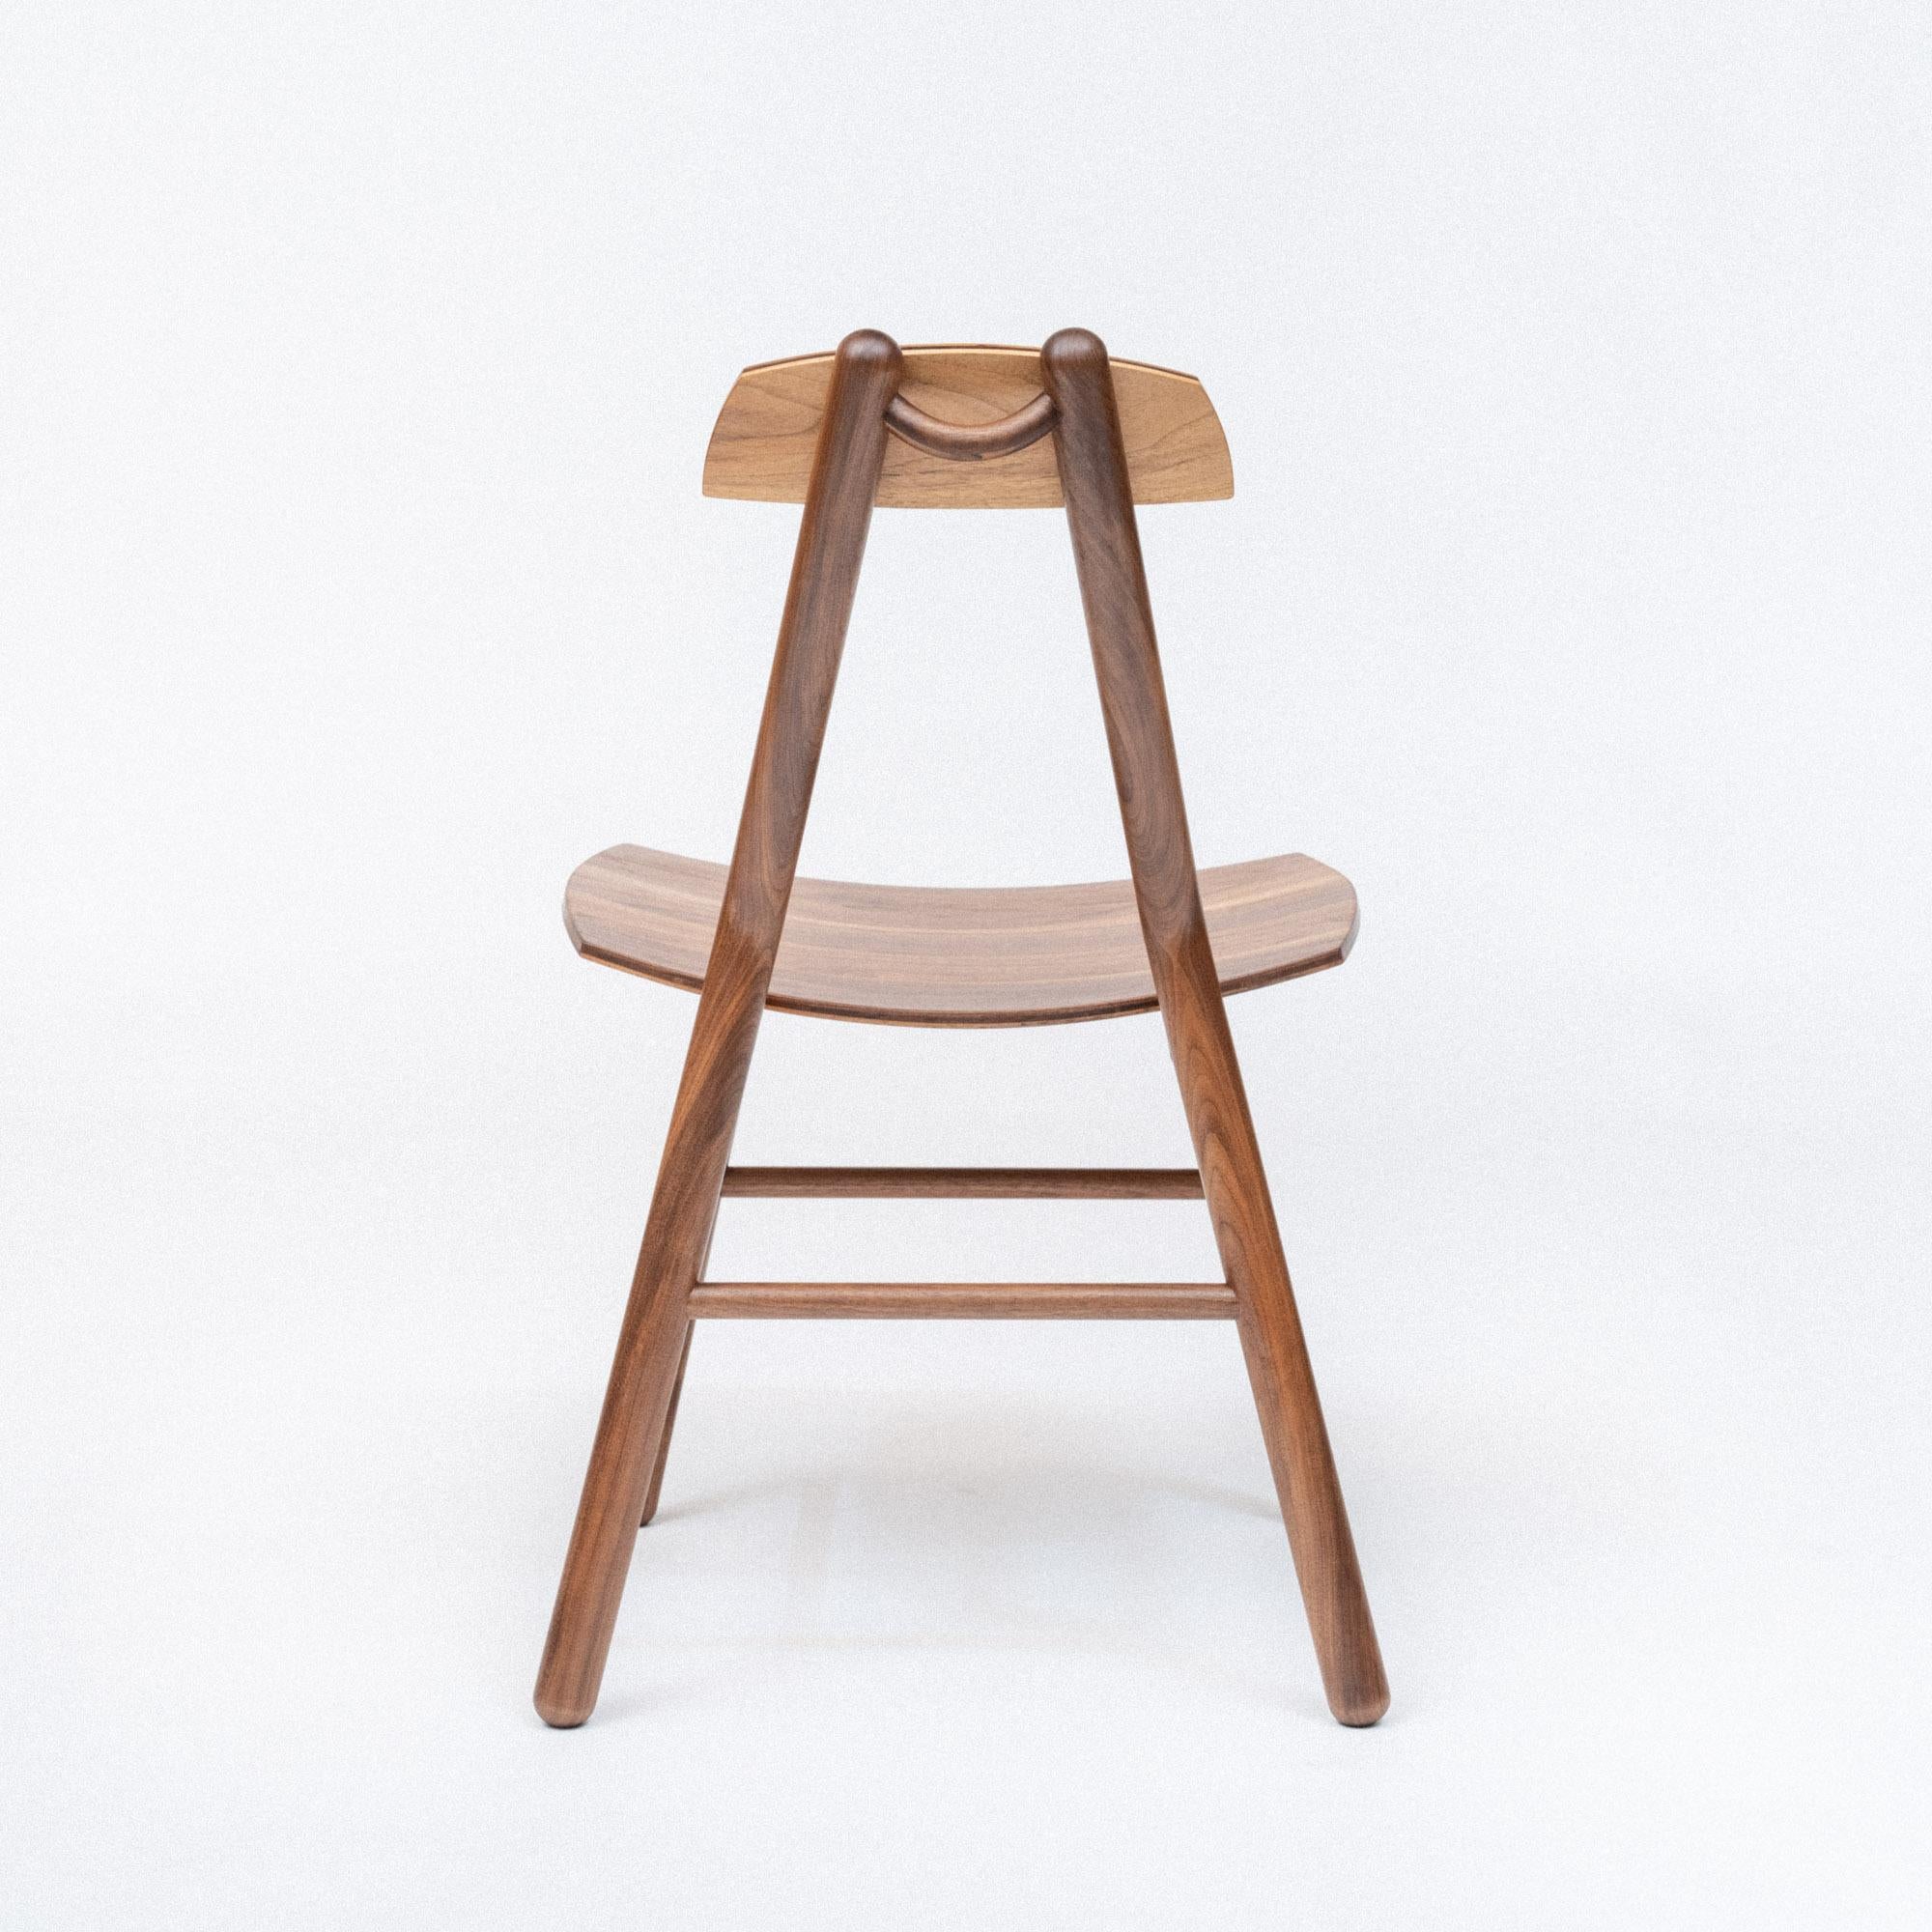 La chaise Hiro est un design contemporain et minimal fabriqué selon des méthodes traditionnelles et une menuiserie en bois massif. Le siège et le dossier sont fabriqués à partir de bois dur fraisé sur mesure, avec une courbe spécialement pressée qui